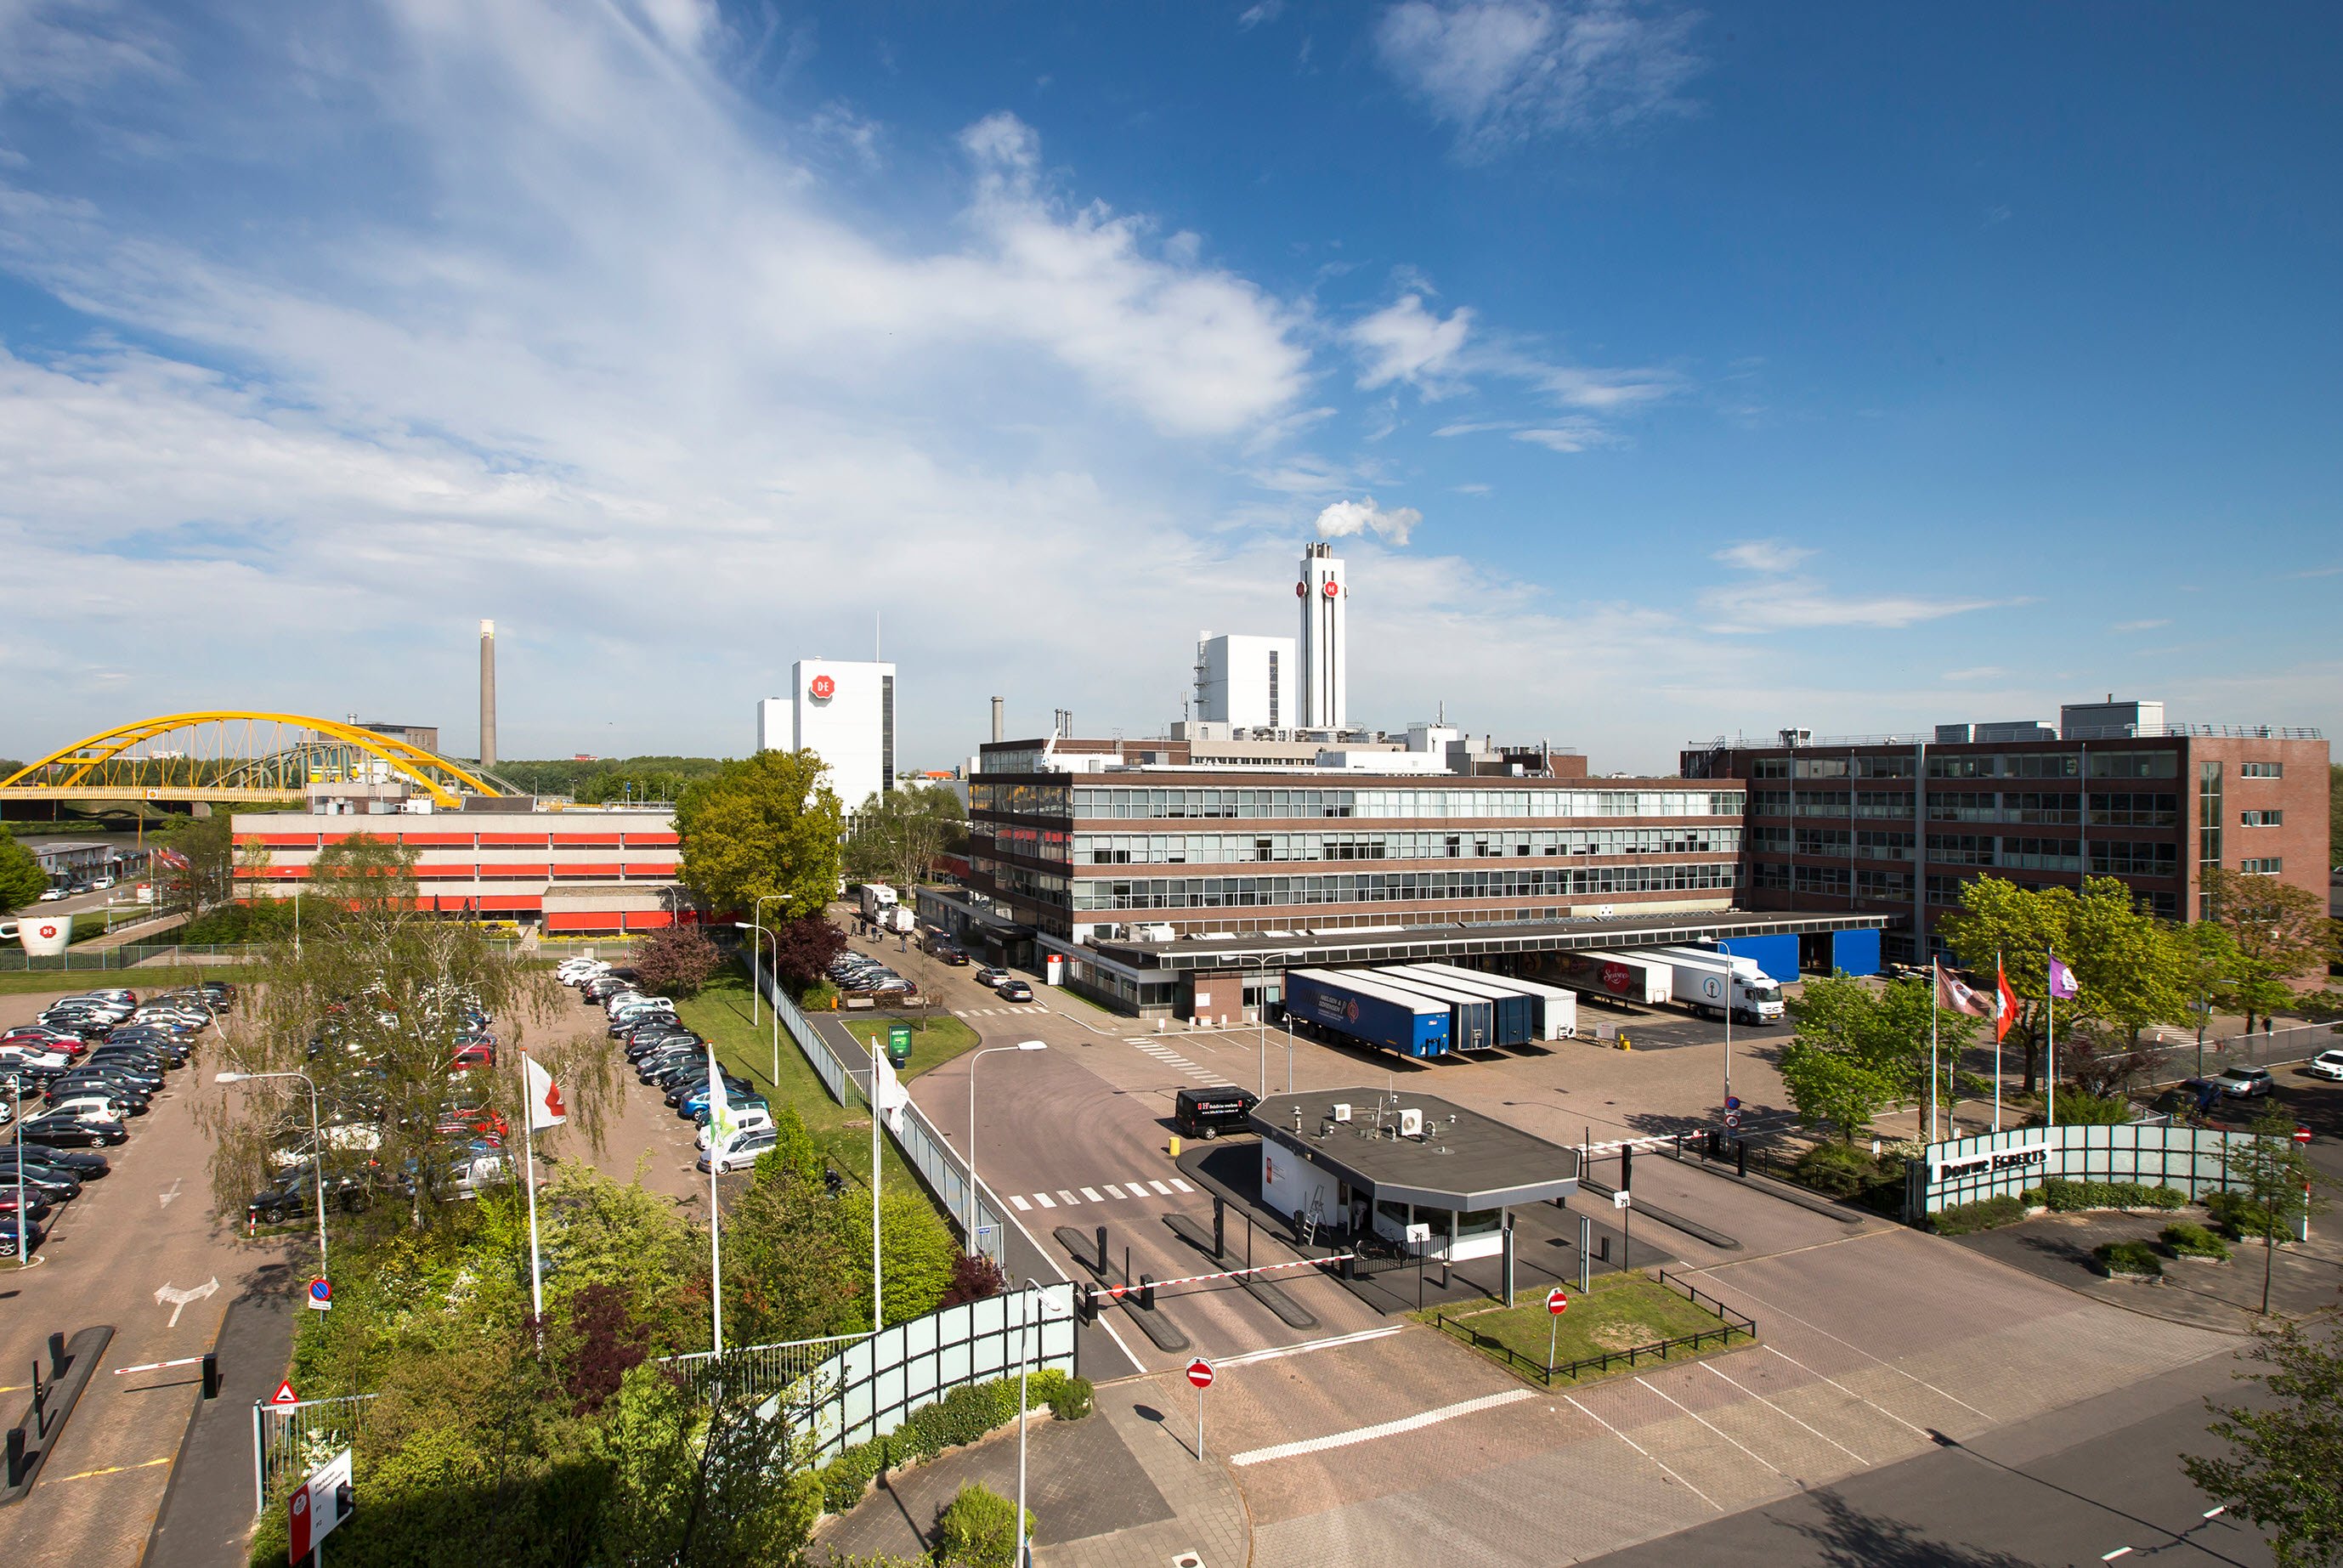 JDE Peets Utrecht Factory